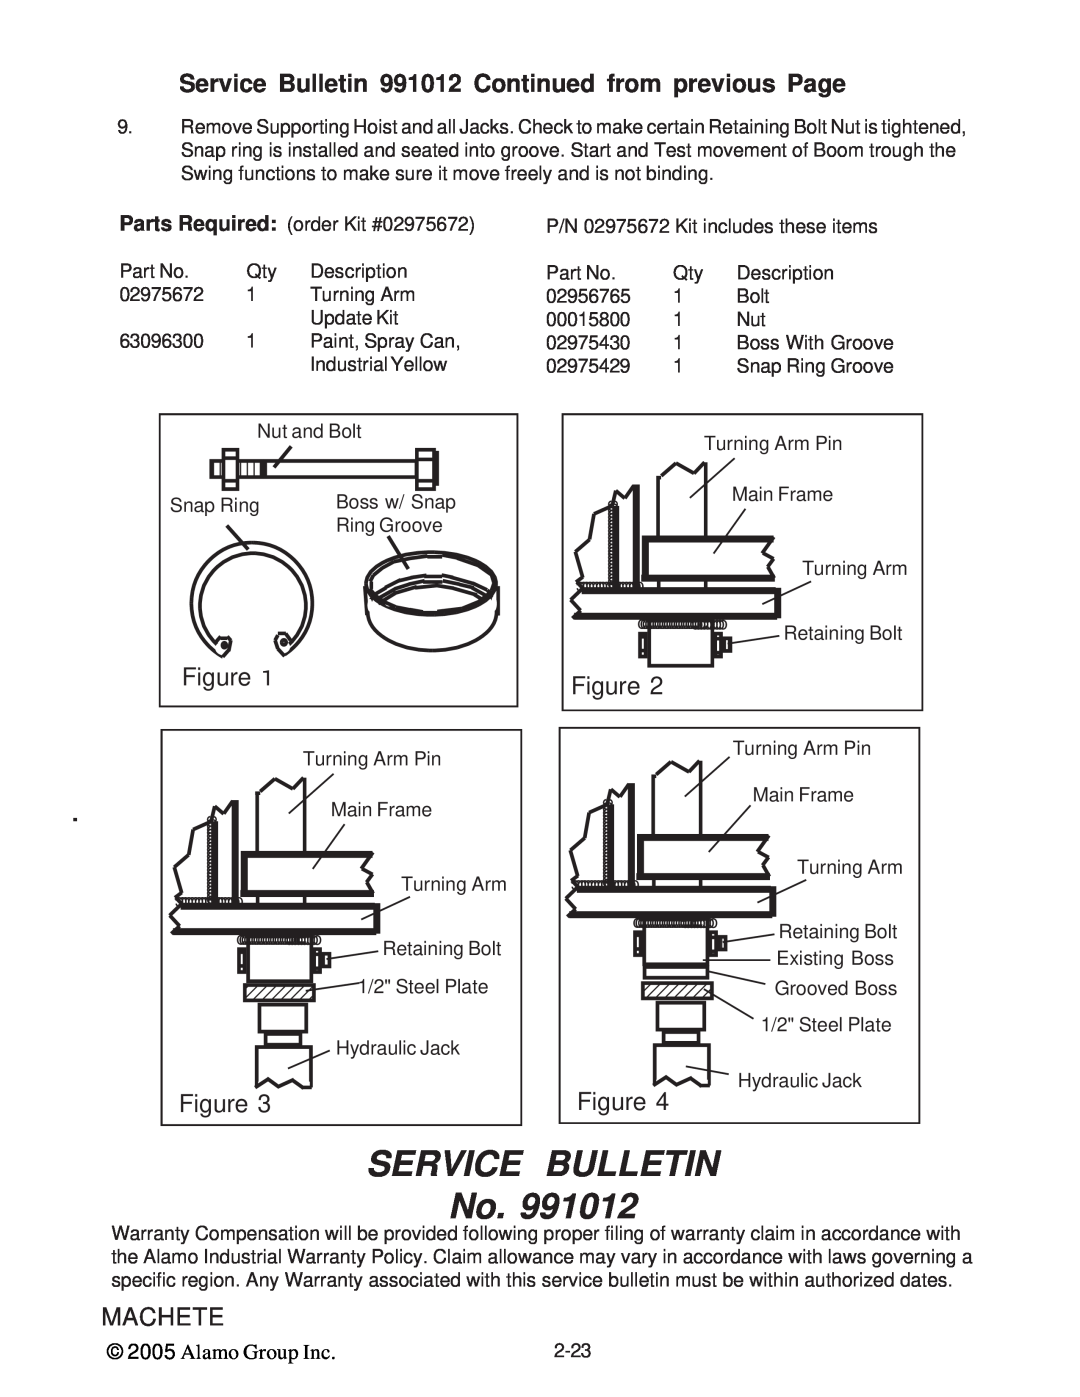 Alamo T 7740 manual Service Bulletin, Figure, Machete, Alamo Group Inc 